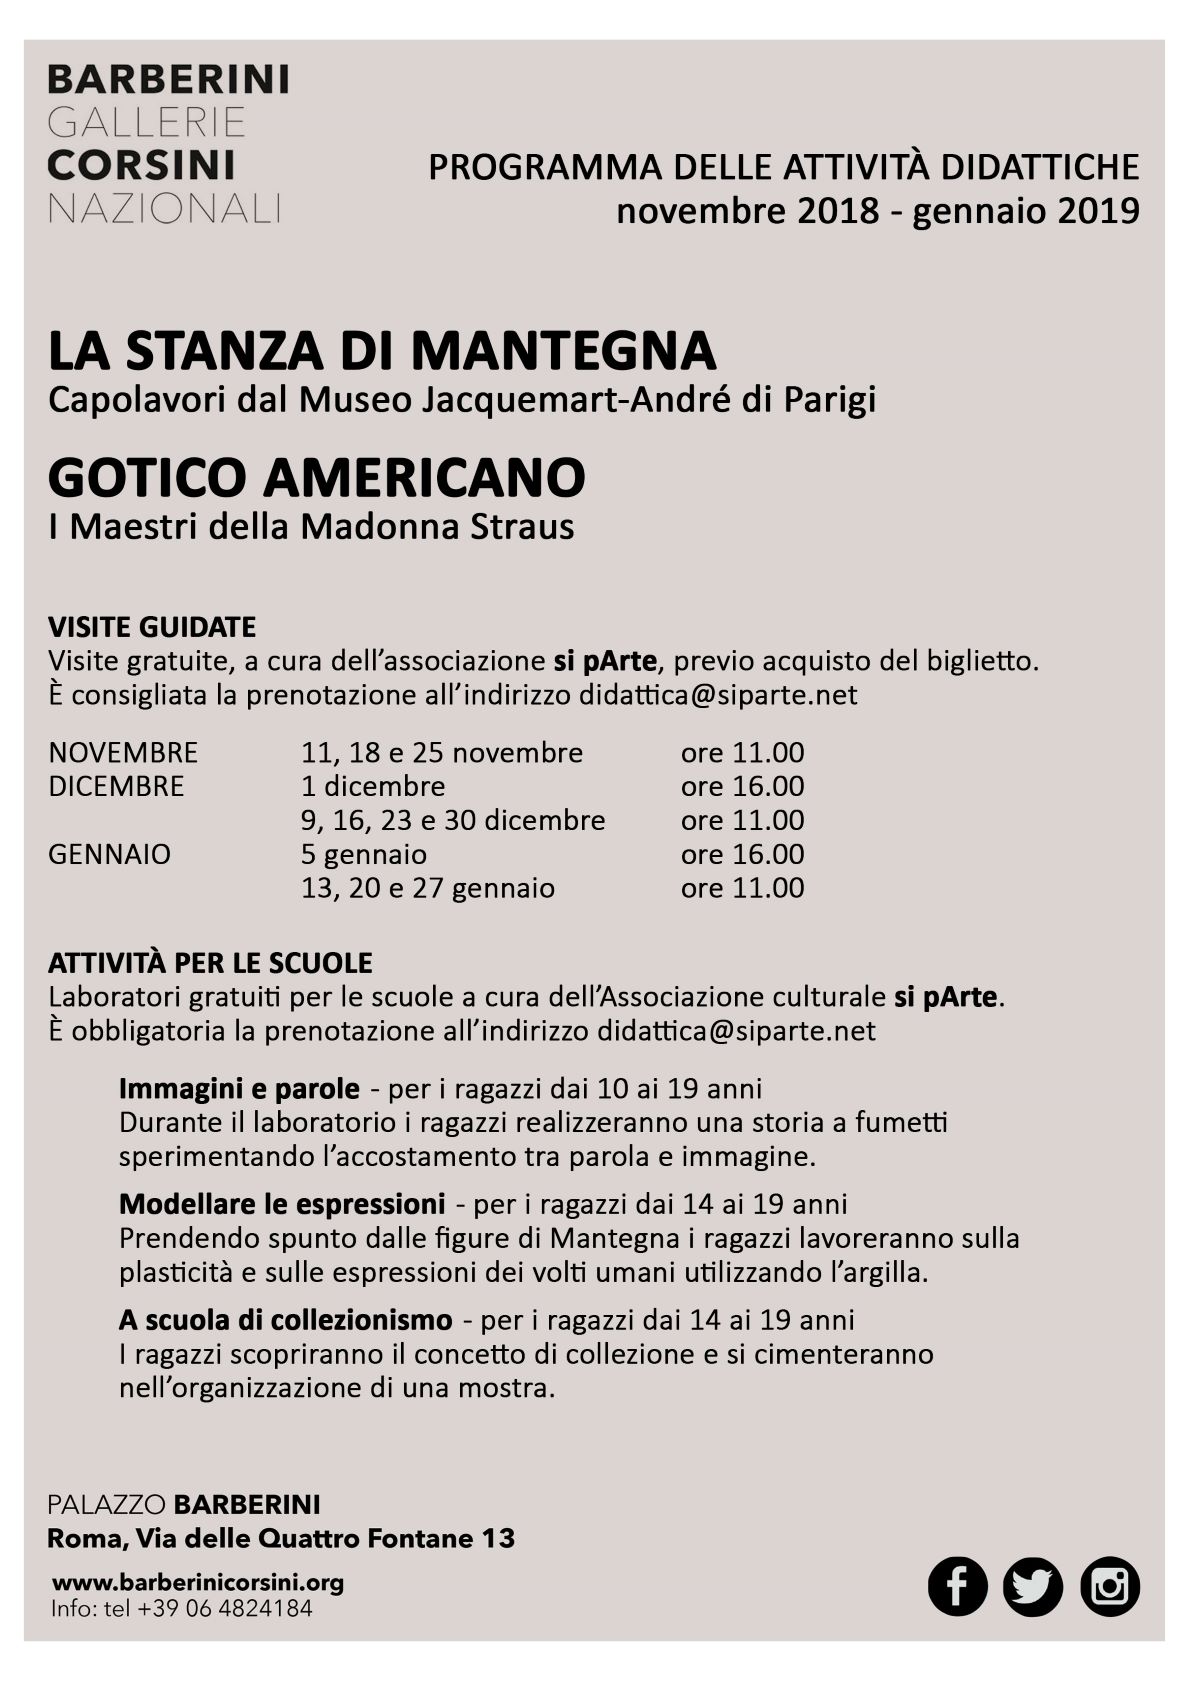 Visite guidate gratuite alle mostre: La stanza di Mantegna e Gotico Americano